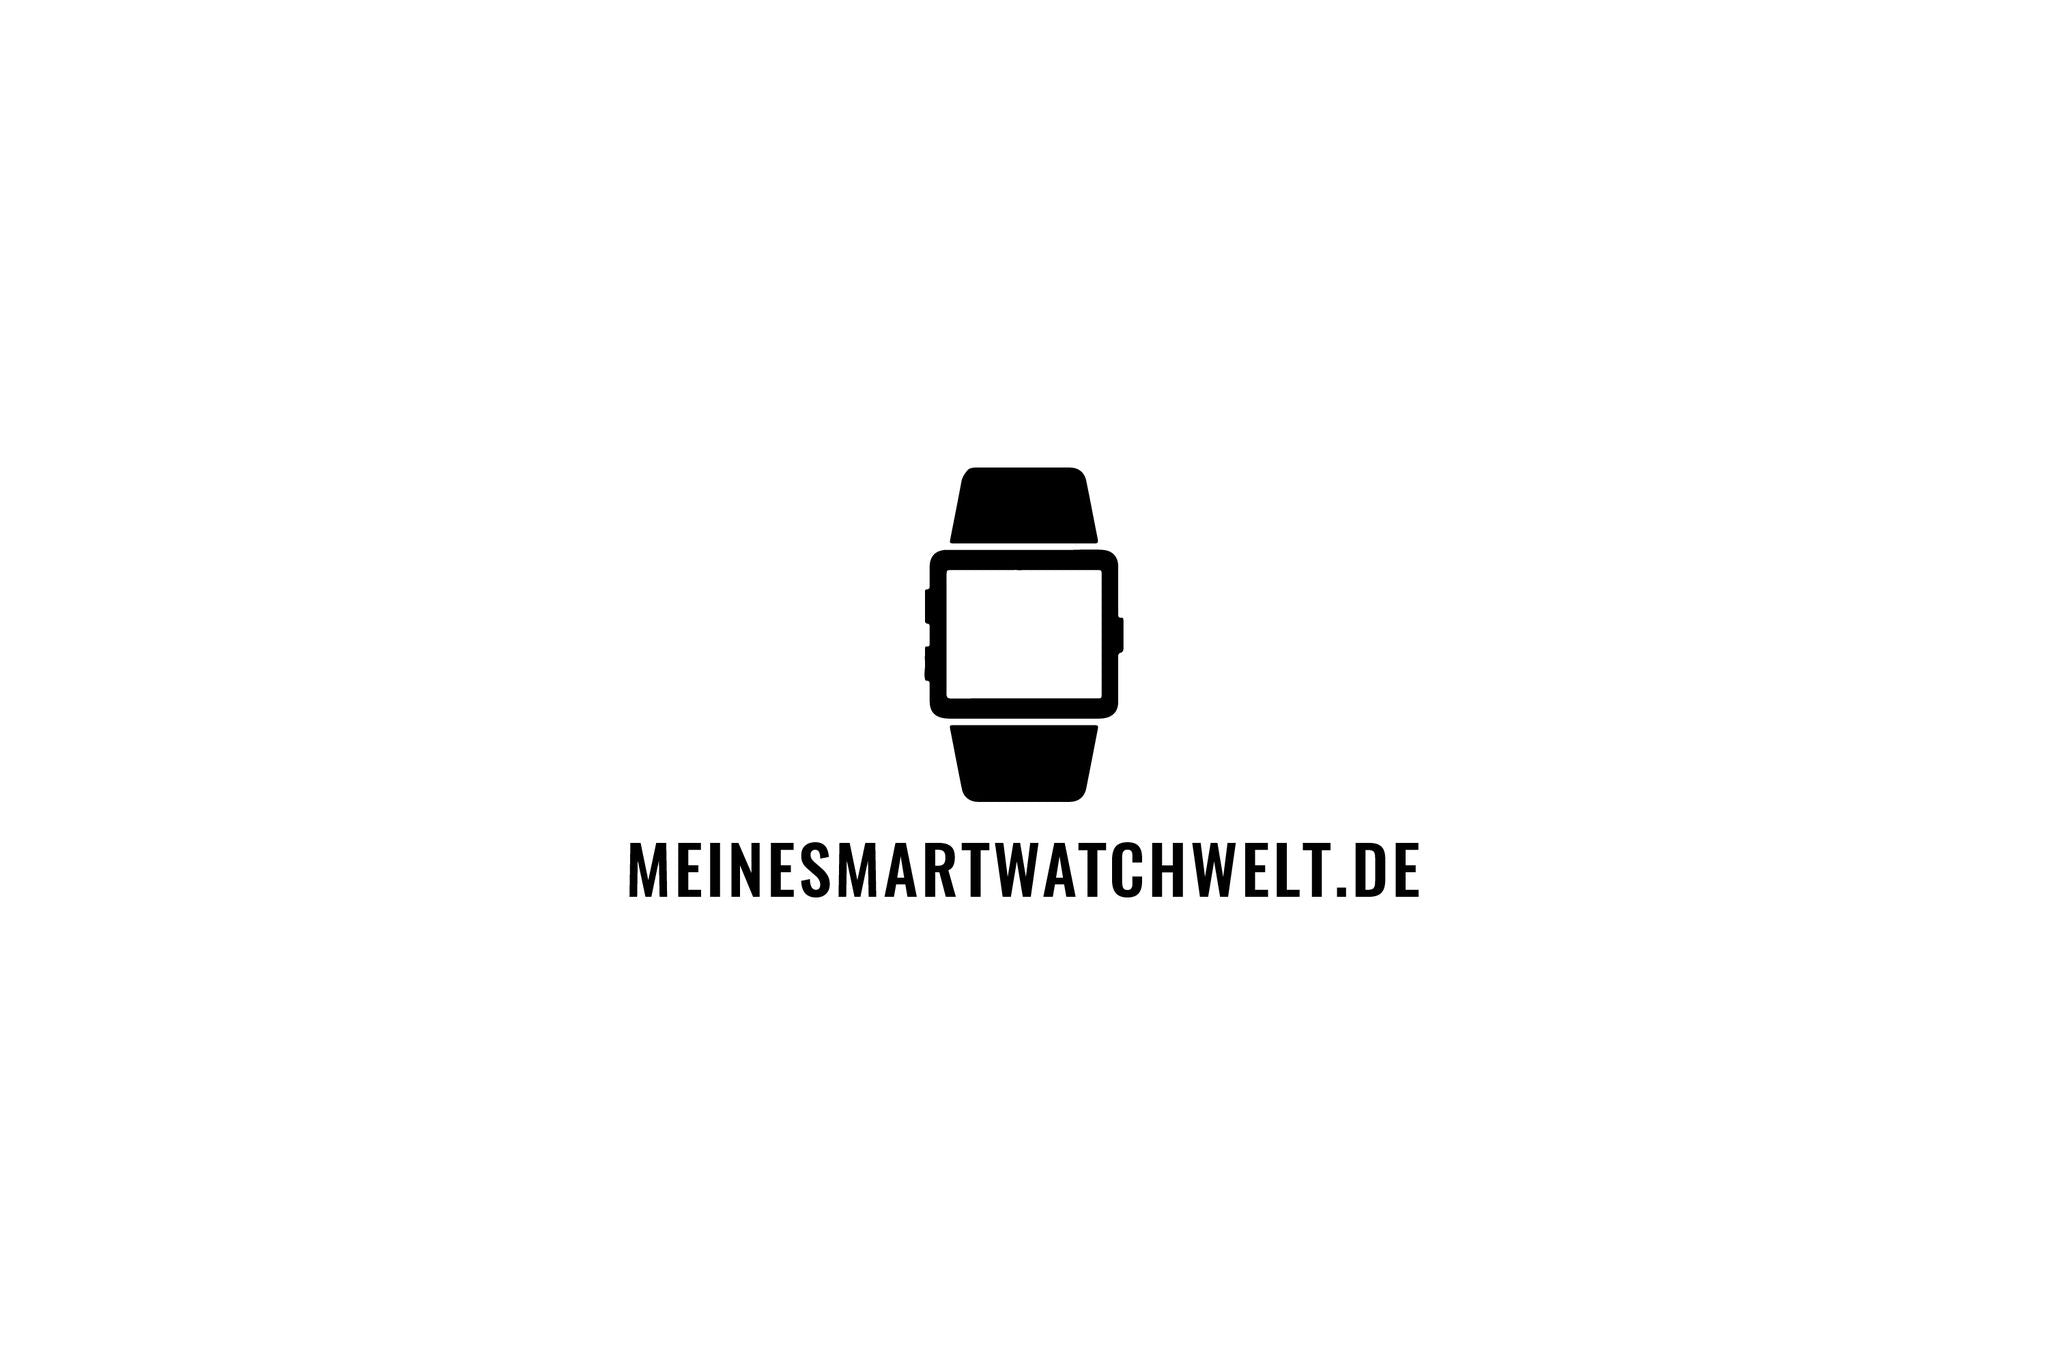 (c) Meinesmartwatchwelt.de